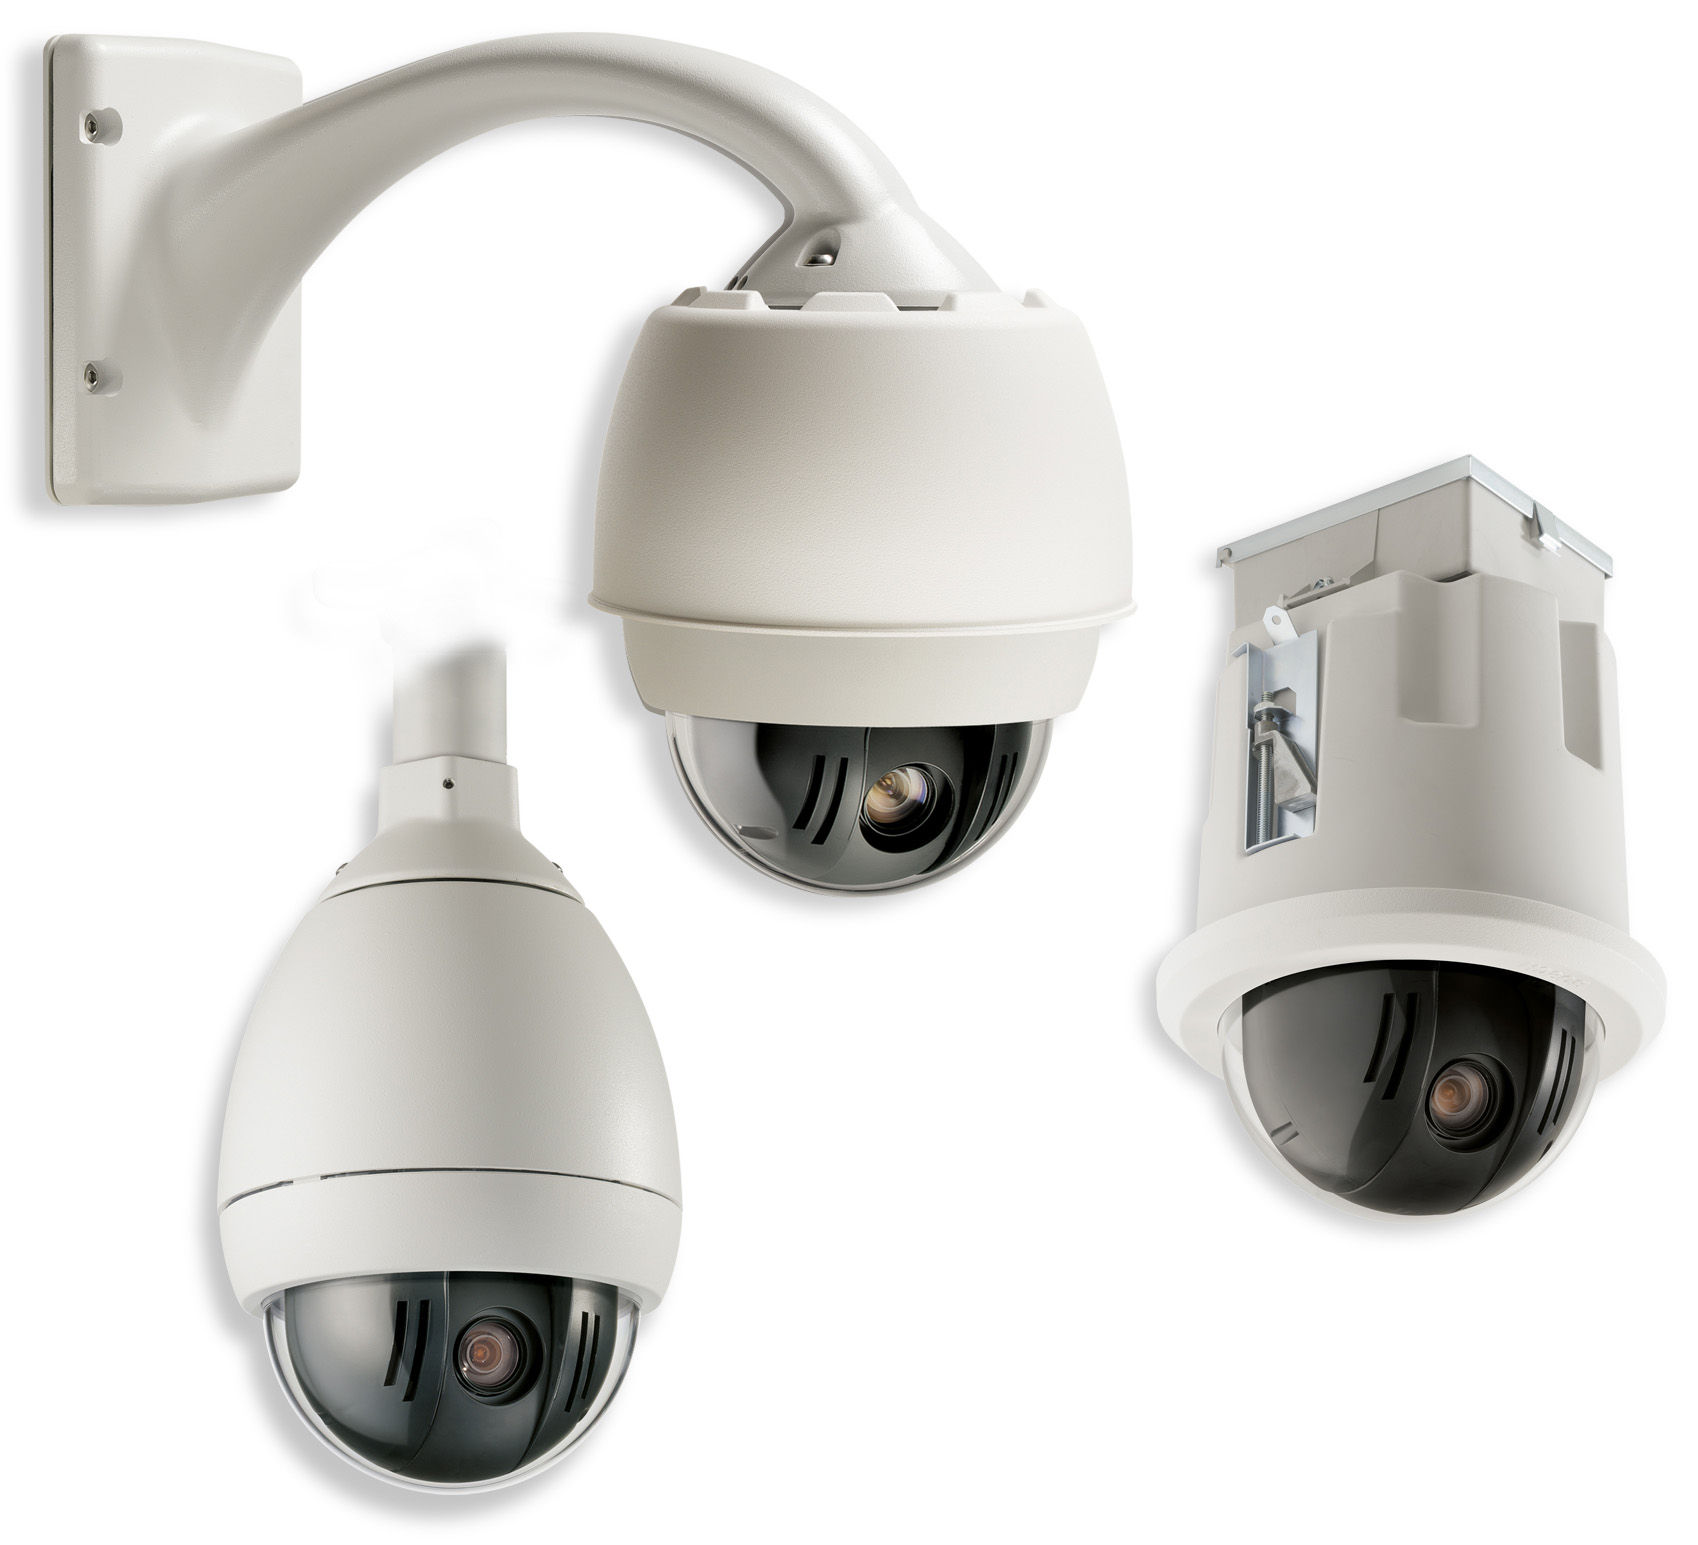 CCTV Inteligentní kamerový systém PTZ řady AutoDome 500i Inteligentní kamerový systém PTZ řady AutoDome 500i Plně výměnné řídicí jednotky, kamery, kryty, komunikační moduly a držáky Výběr kamer typu